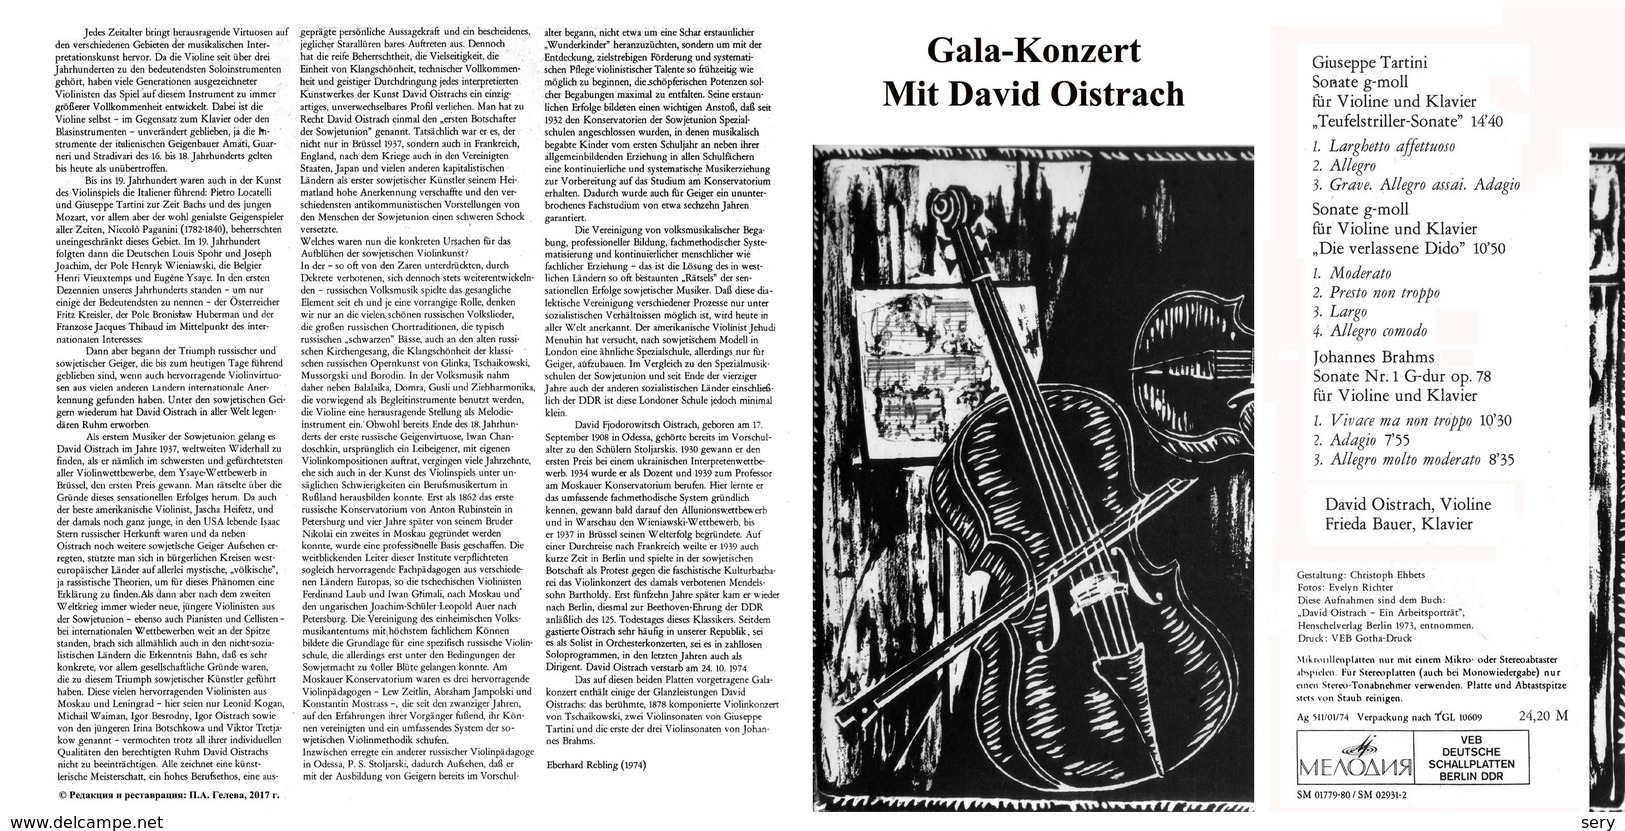 Superlimited Edition CD David Oistrach. GALA-KONZERT MIT DAVID OISTRACH. - Instrumental